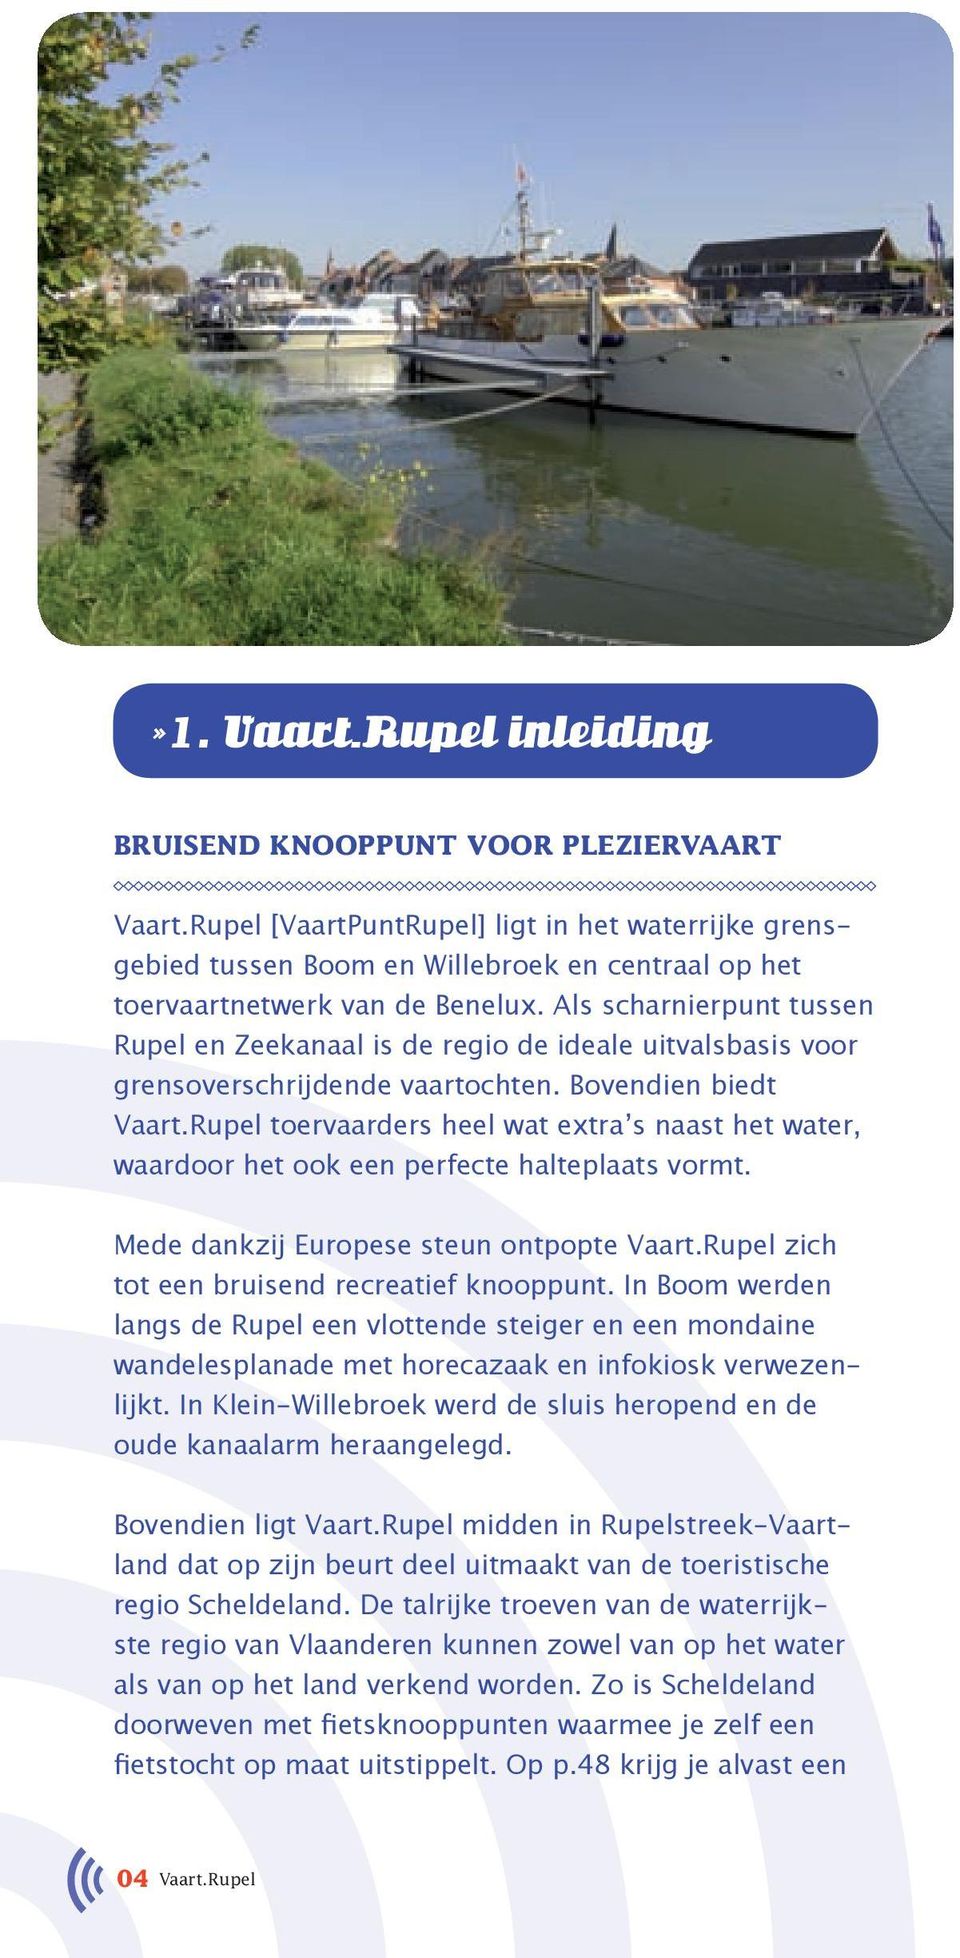 Als scharnierpunt tussen Rupel en Zeekanaal is de regio de ideale uitvalsbasis voor grensoverschrijdende vaartochten. Bovendien biedt Vaart.